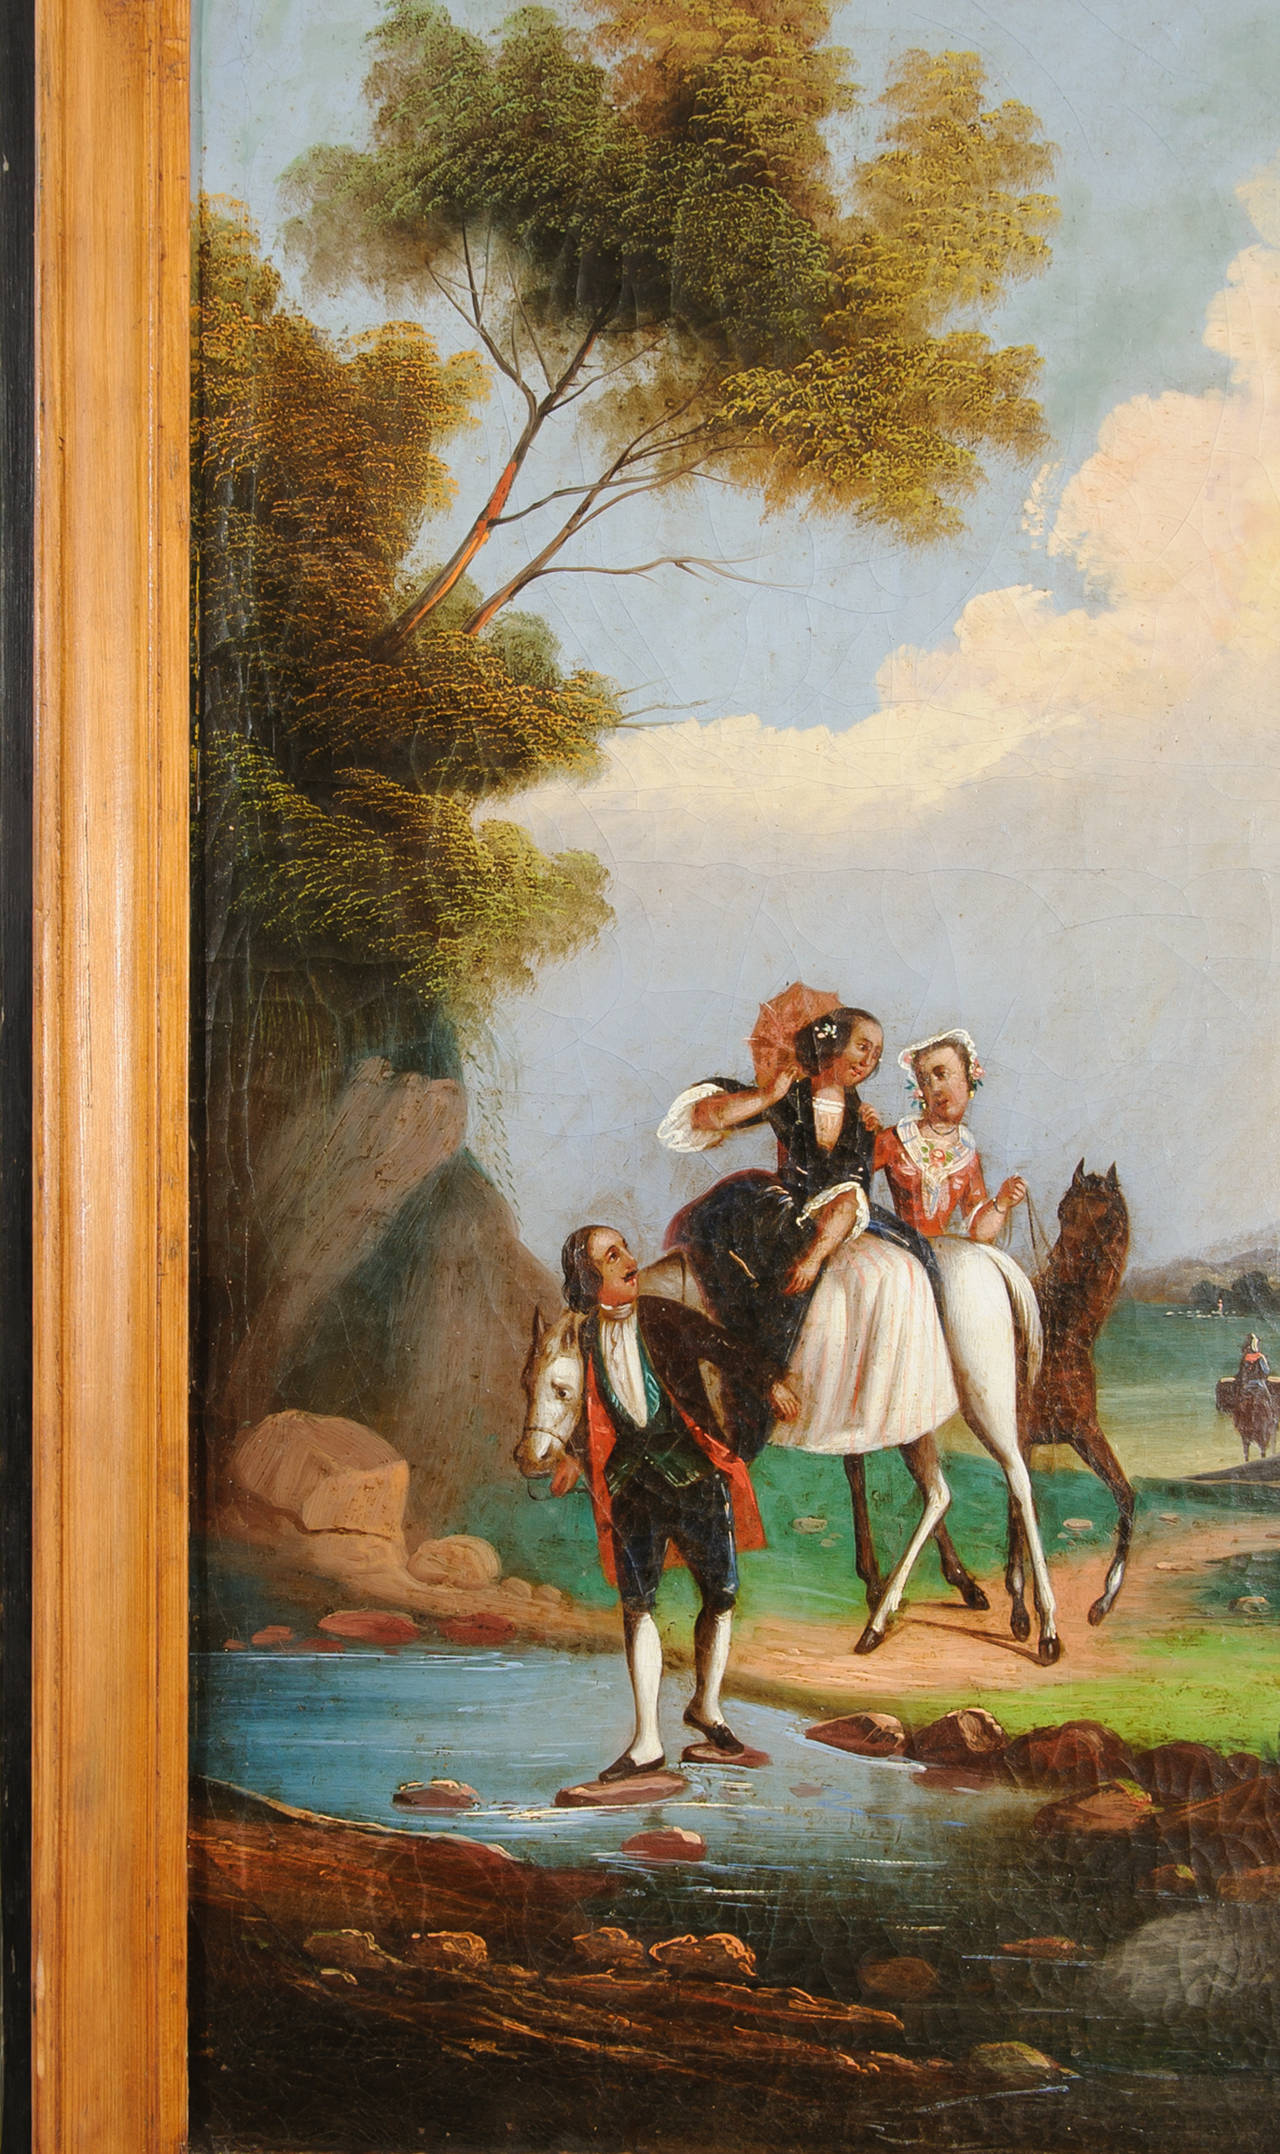 Der Louis XVI-Trumeau-Spiegel hat das originale Quecksilberglas. Die Landschaftsmalerei ist in dem im 18. Jahrhundert beliebten italienischen Stil gehalten. Das Laub erzeugt ein reiches Farbenspiel mit den leichten Wolken, dem blauen Himmel und dem